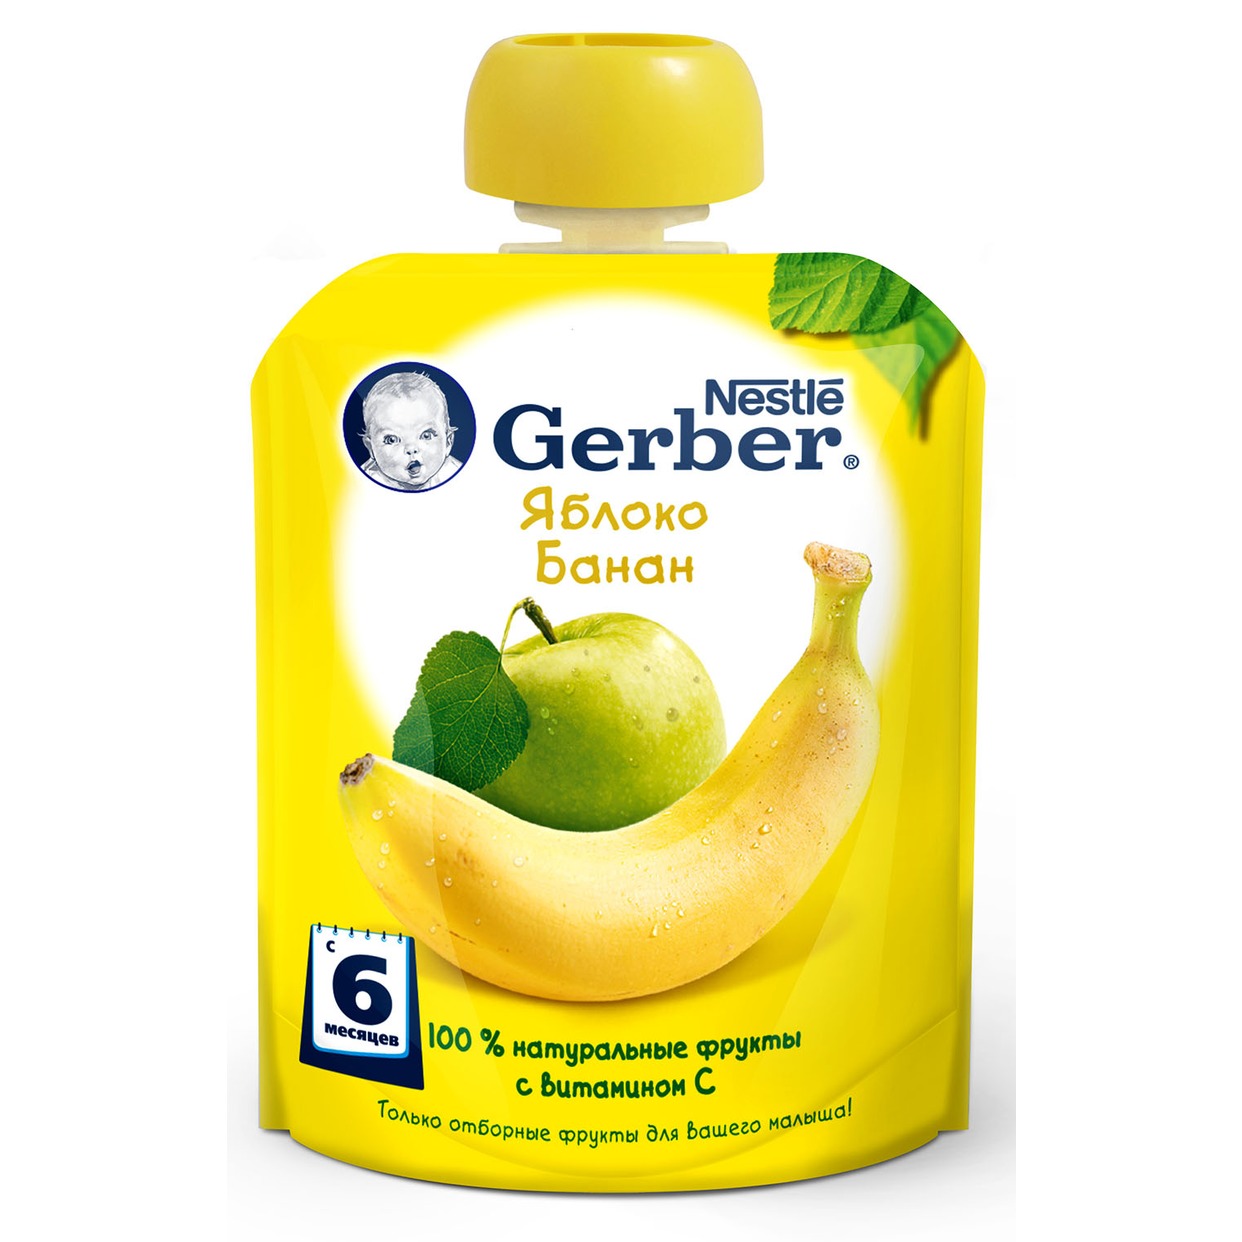 Пюре Gerber Яблоко-Банан фруктовое 90г по акции в Пятерочке